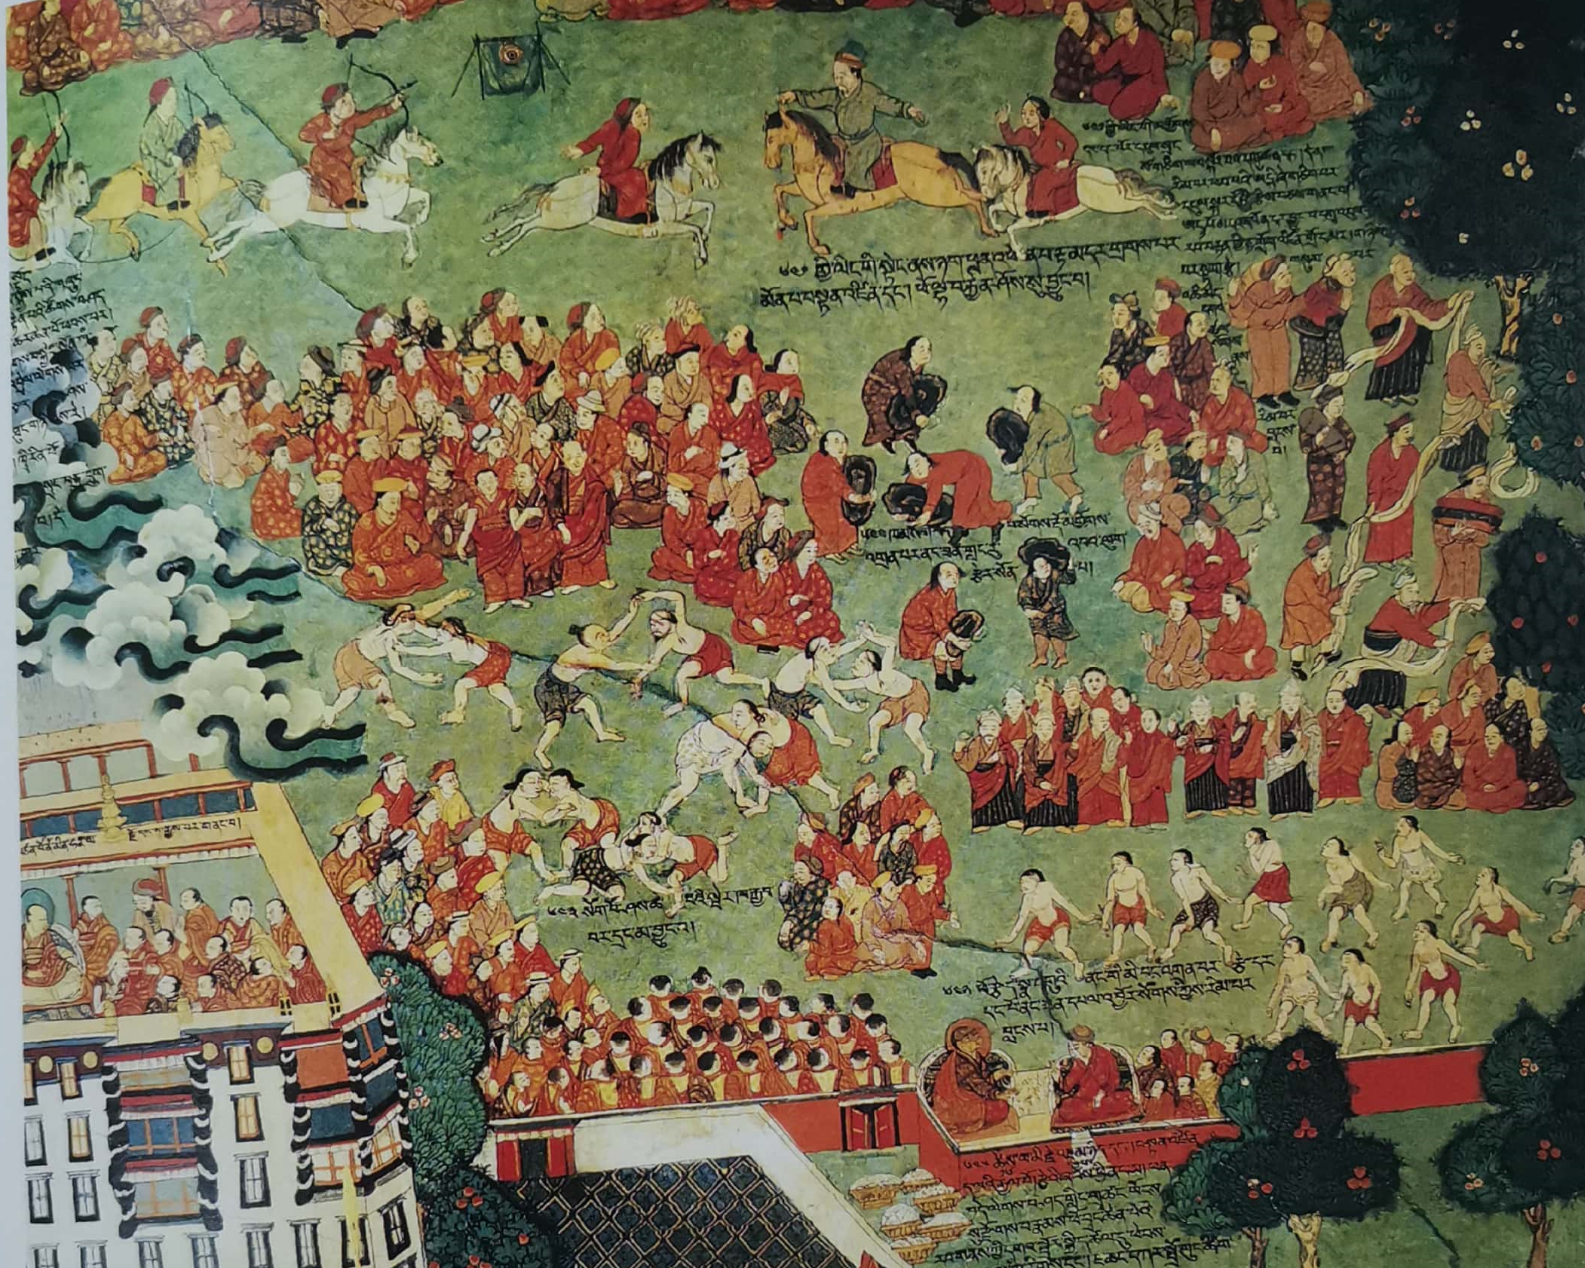 布达拉宫壁画图案图片